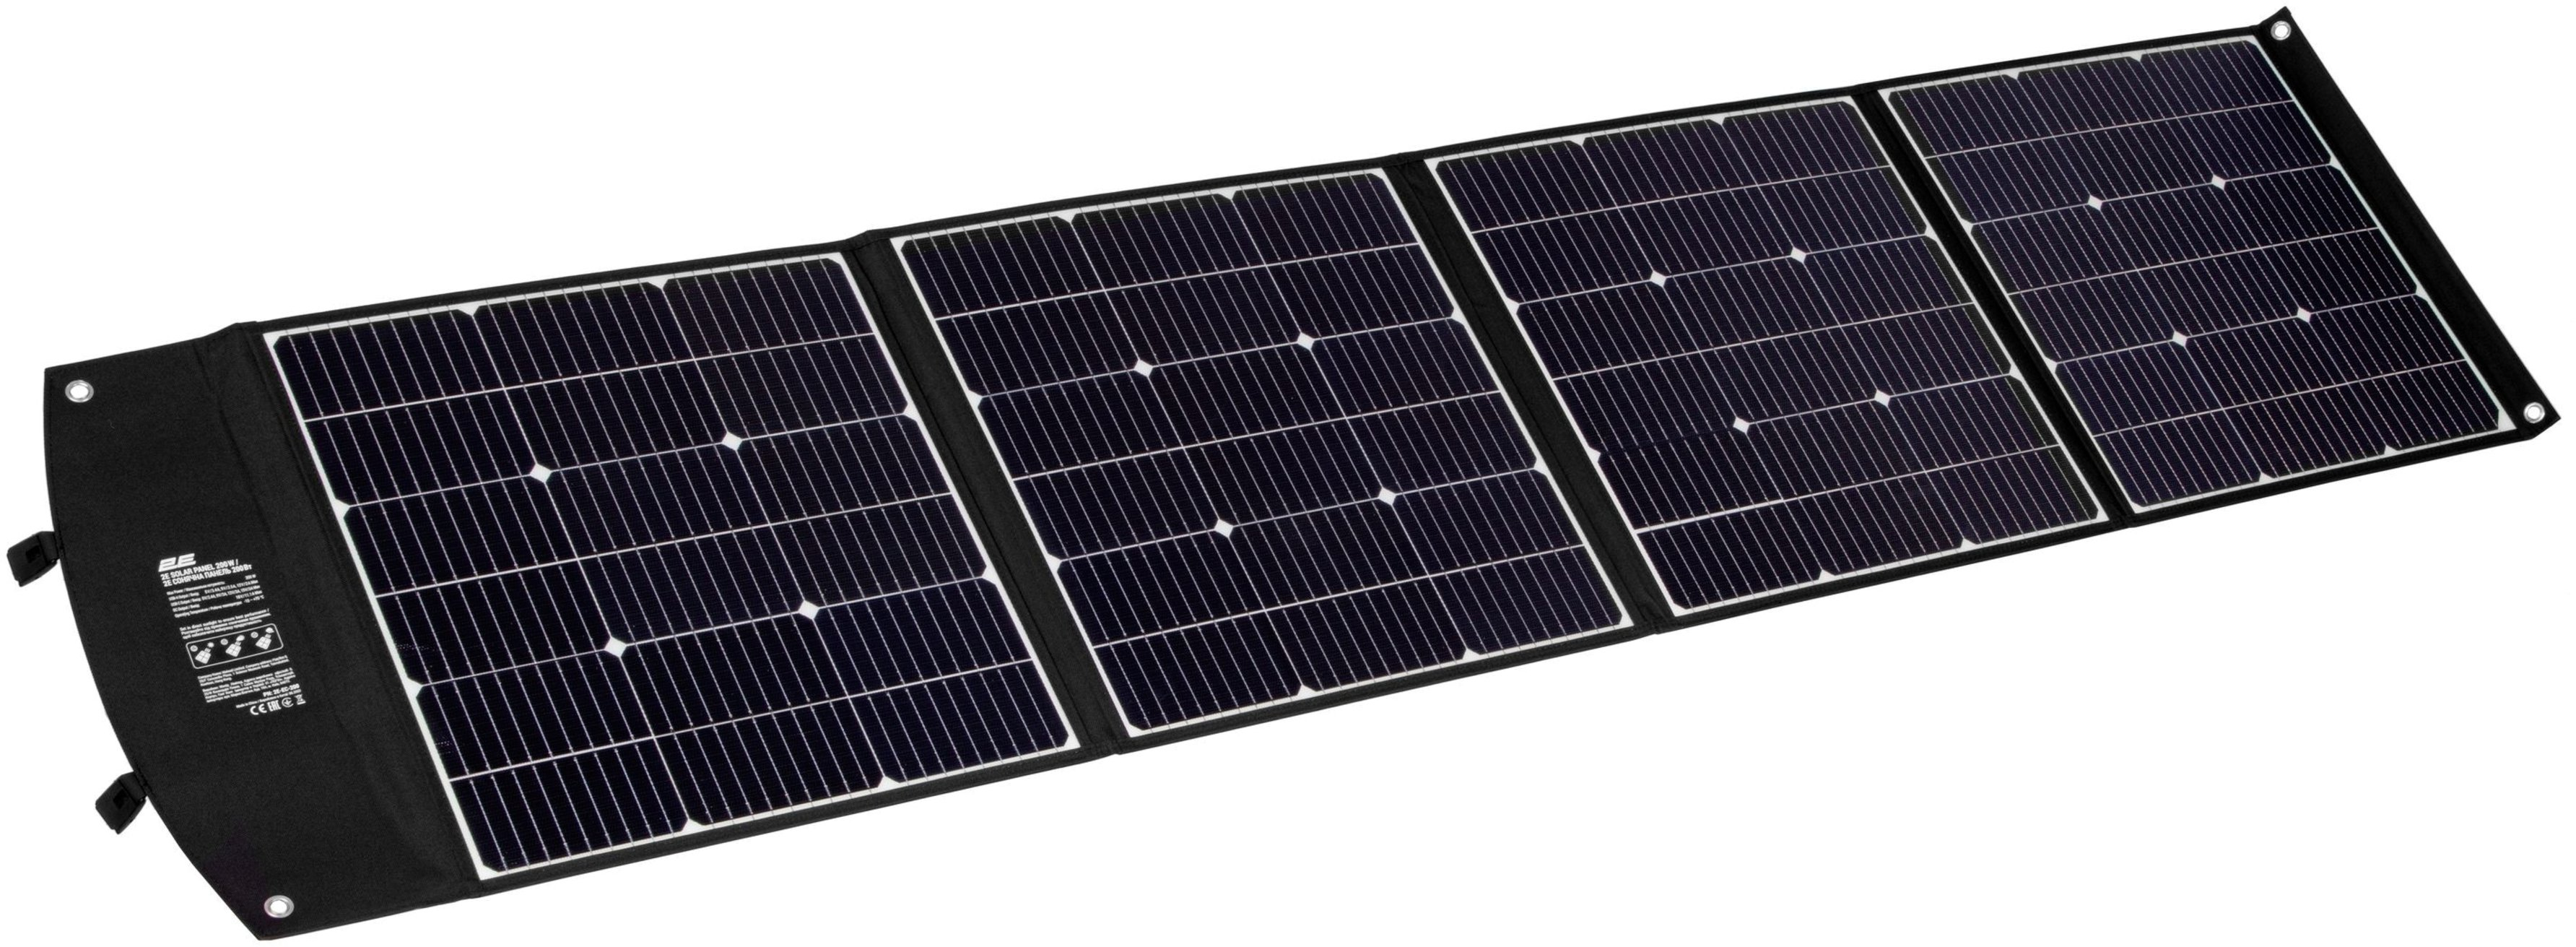 Портативна зарядна станція Segway CUBE 1000, 2584W, 1024Wh + сонячна панель 2E 200 Вт (AA.13.04.02.0004-SET200)фото11